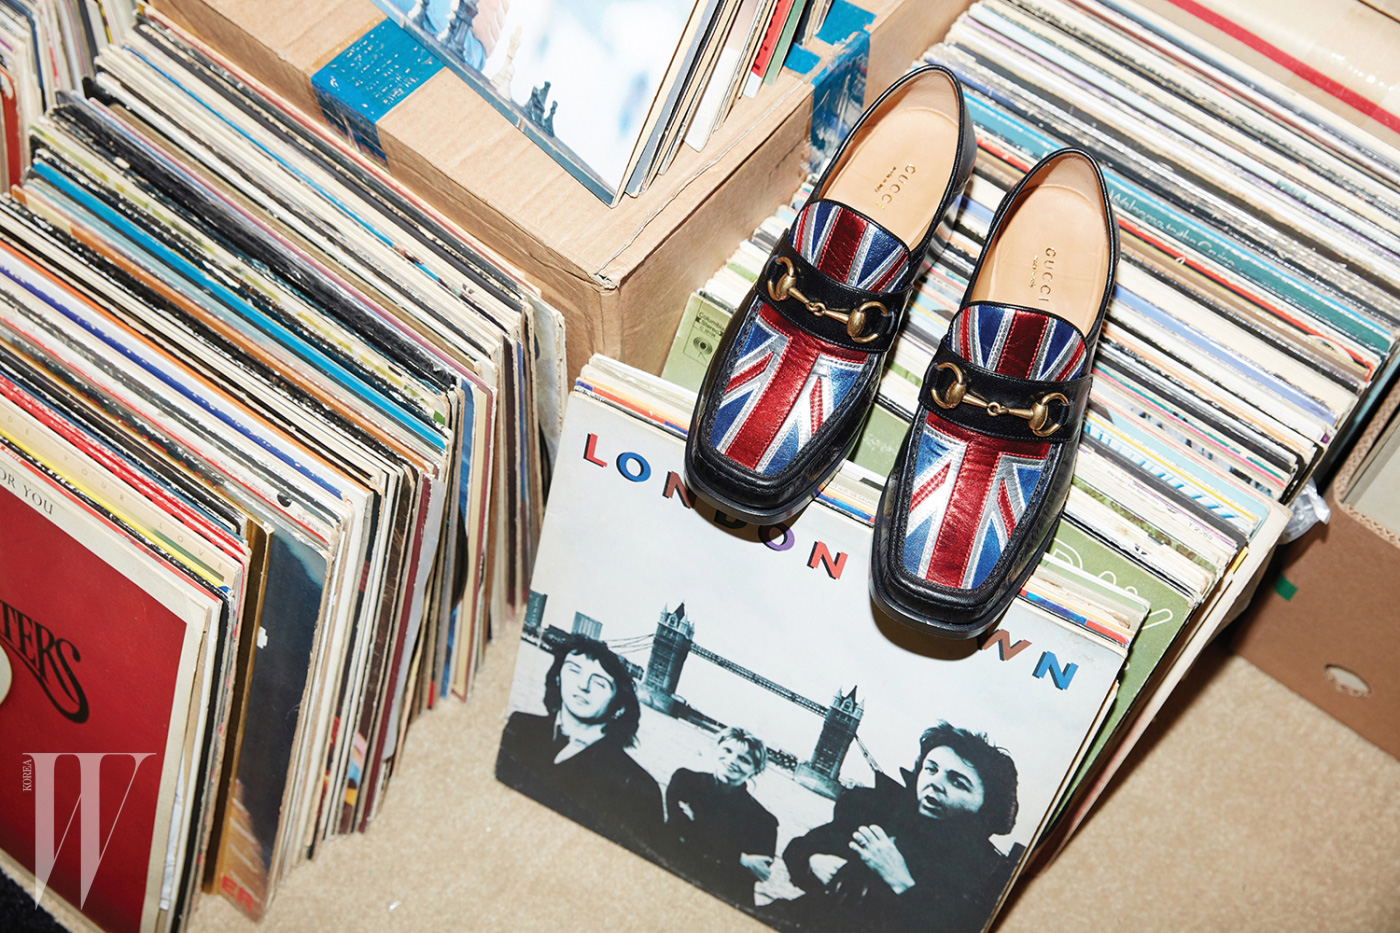 폴 매카트니의  앨범과 함께 놓인 유니언잭을 형상화한 홀스빗 로퍼는 구찌 제품. 97만원.